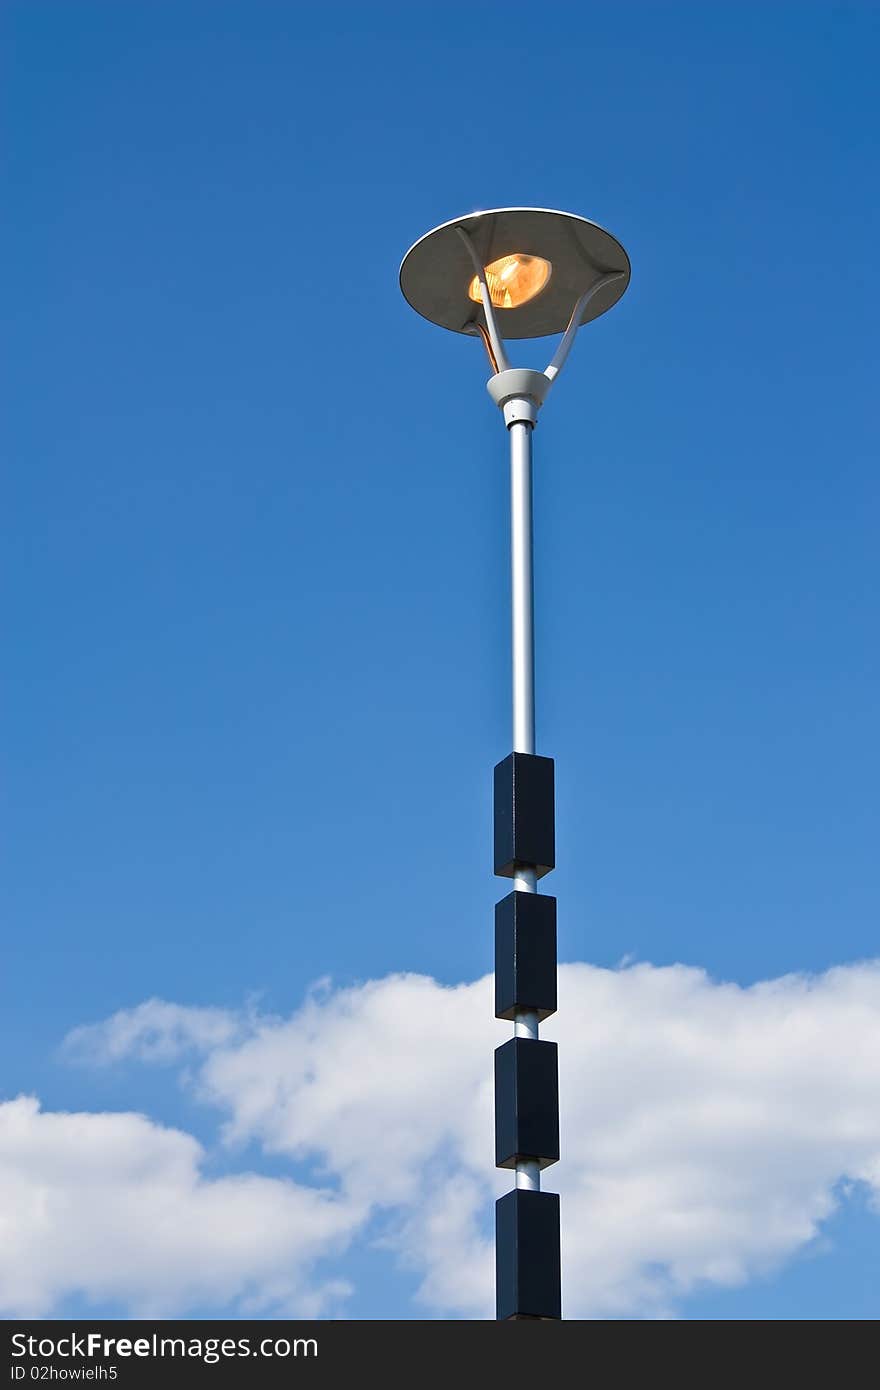 Lamp pole on a sky background